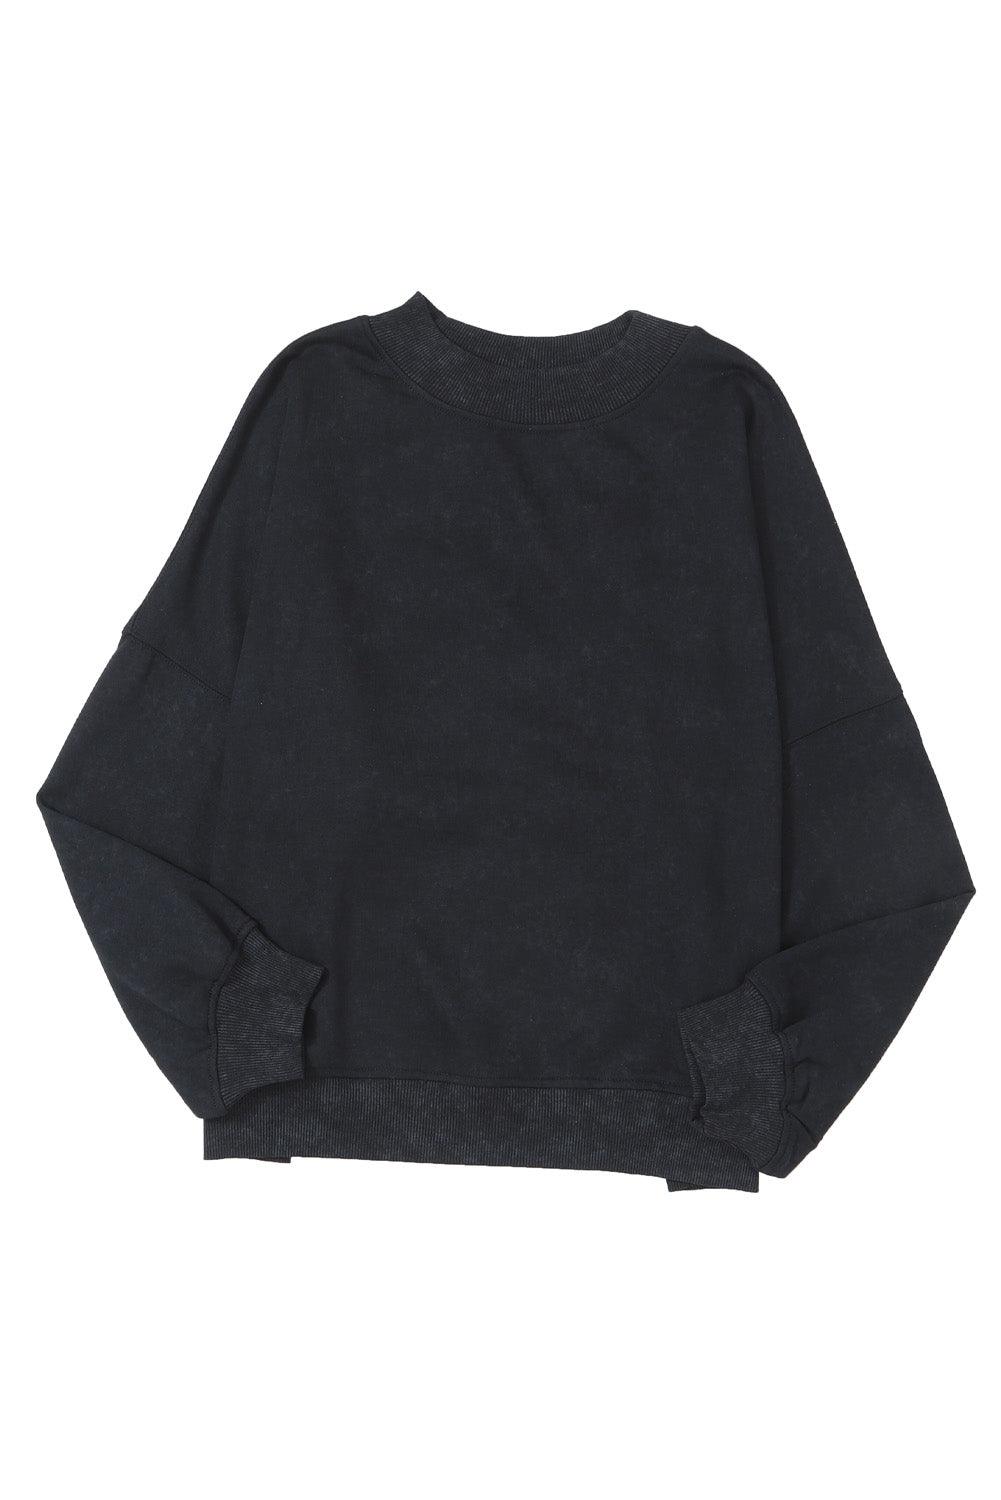 Black Drop Shoulder Crew Neck Pullover Sweatshirt - L & M Kee, LLC